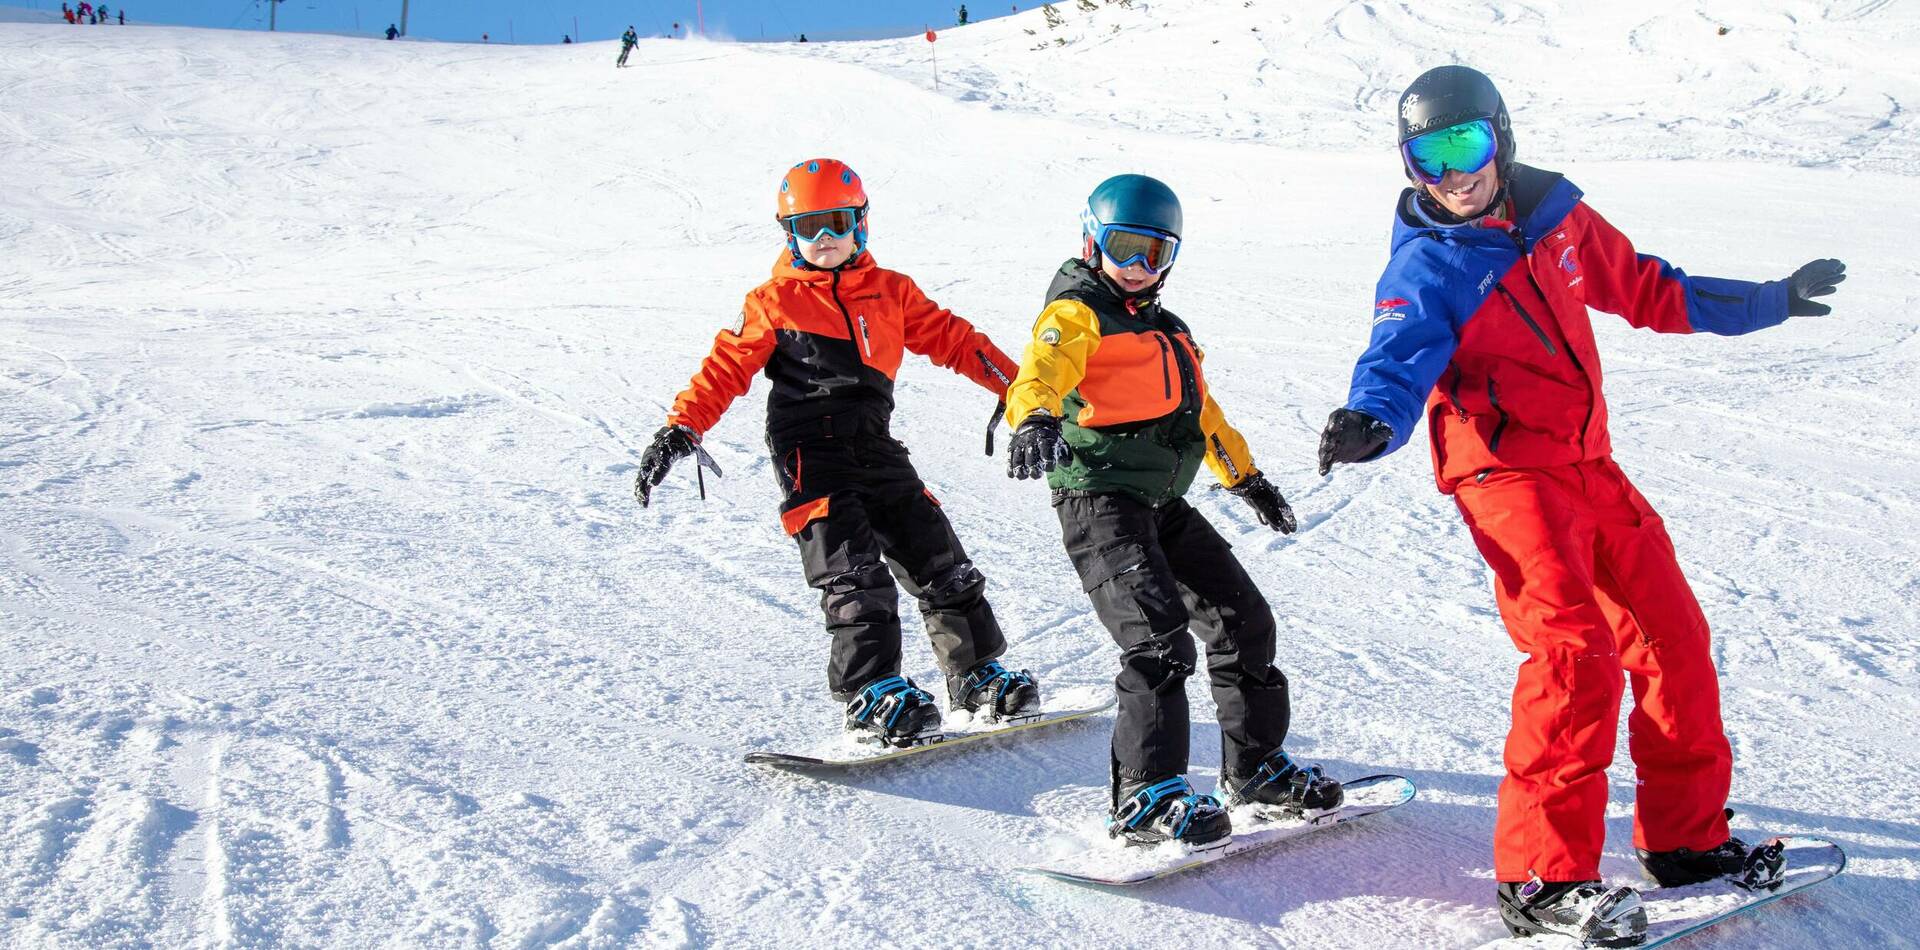 Snowboard 
für Erwachsene und Kinder ab 8 